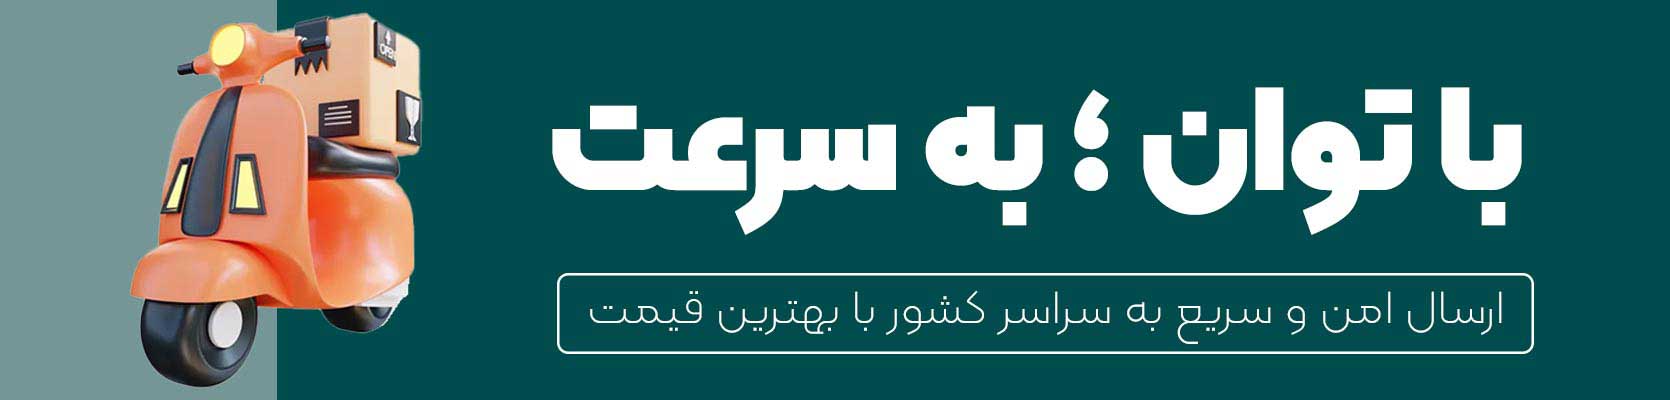 فروشگاه توان نمایندگی رسمی و اصلی محصولات داهوا در تهران ایران